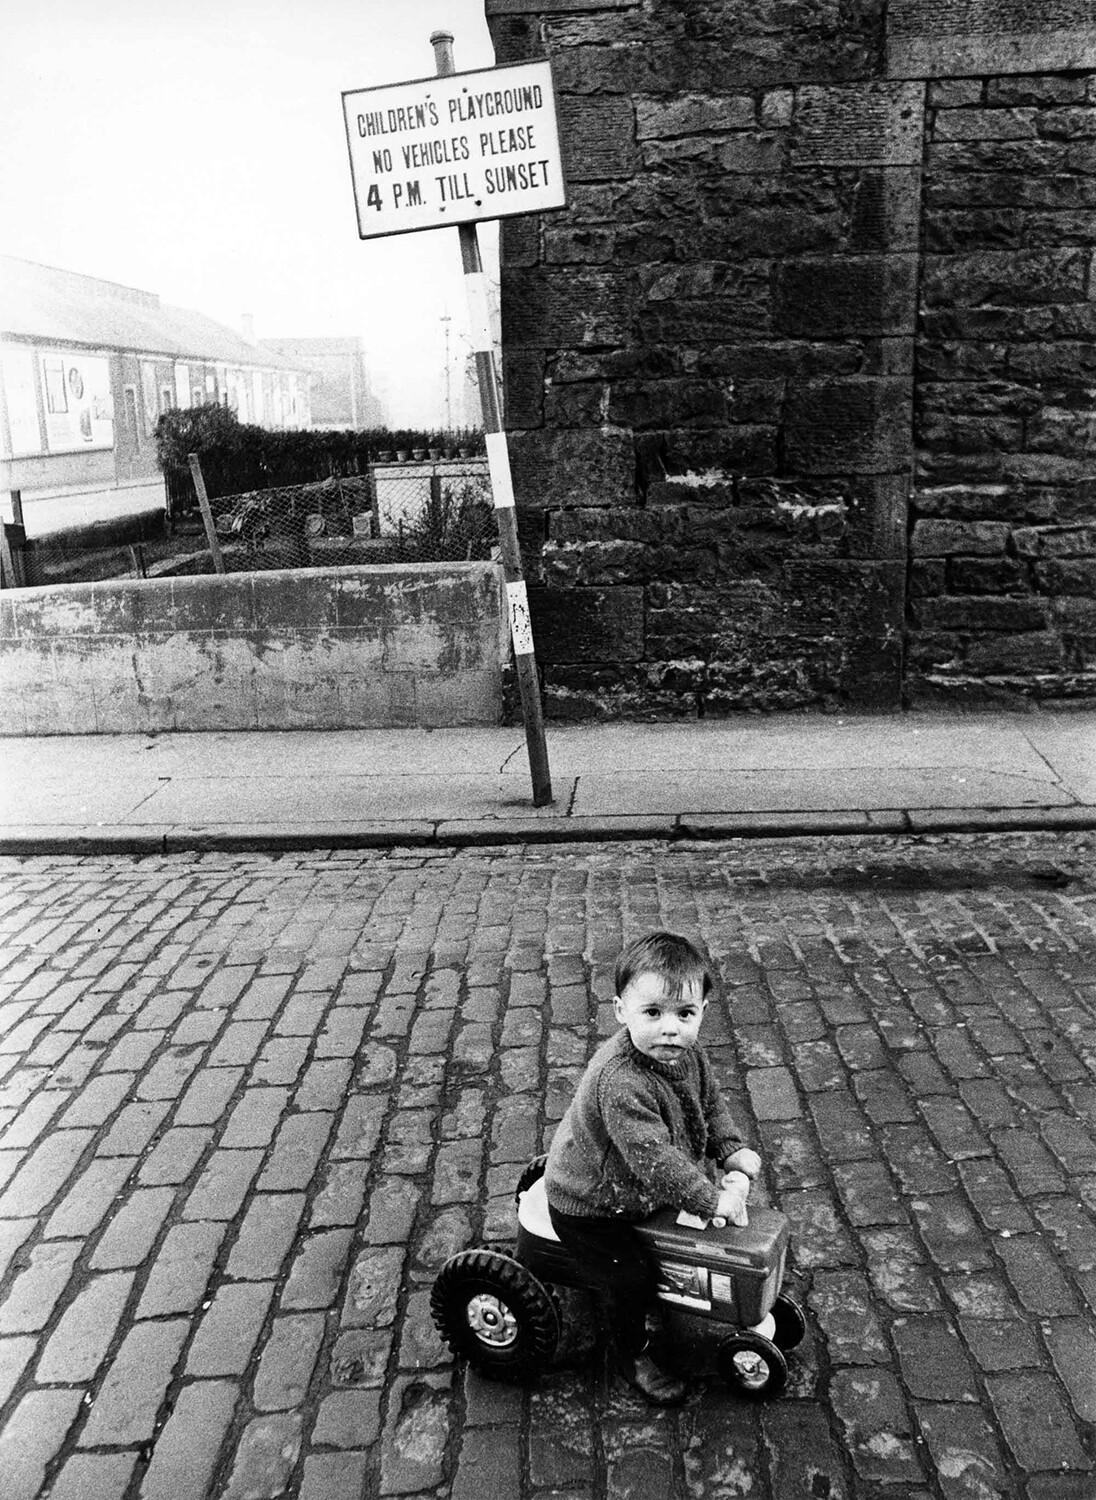 Мальчик на игрушечном тракторе, Эдинбург, 1966. Фотограф Роберт Бломфилд